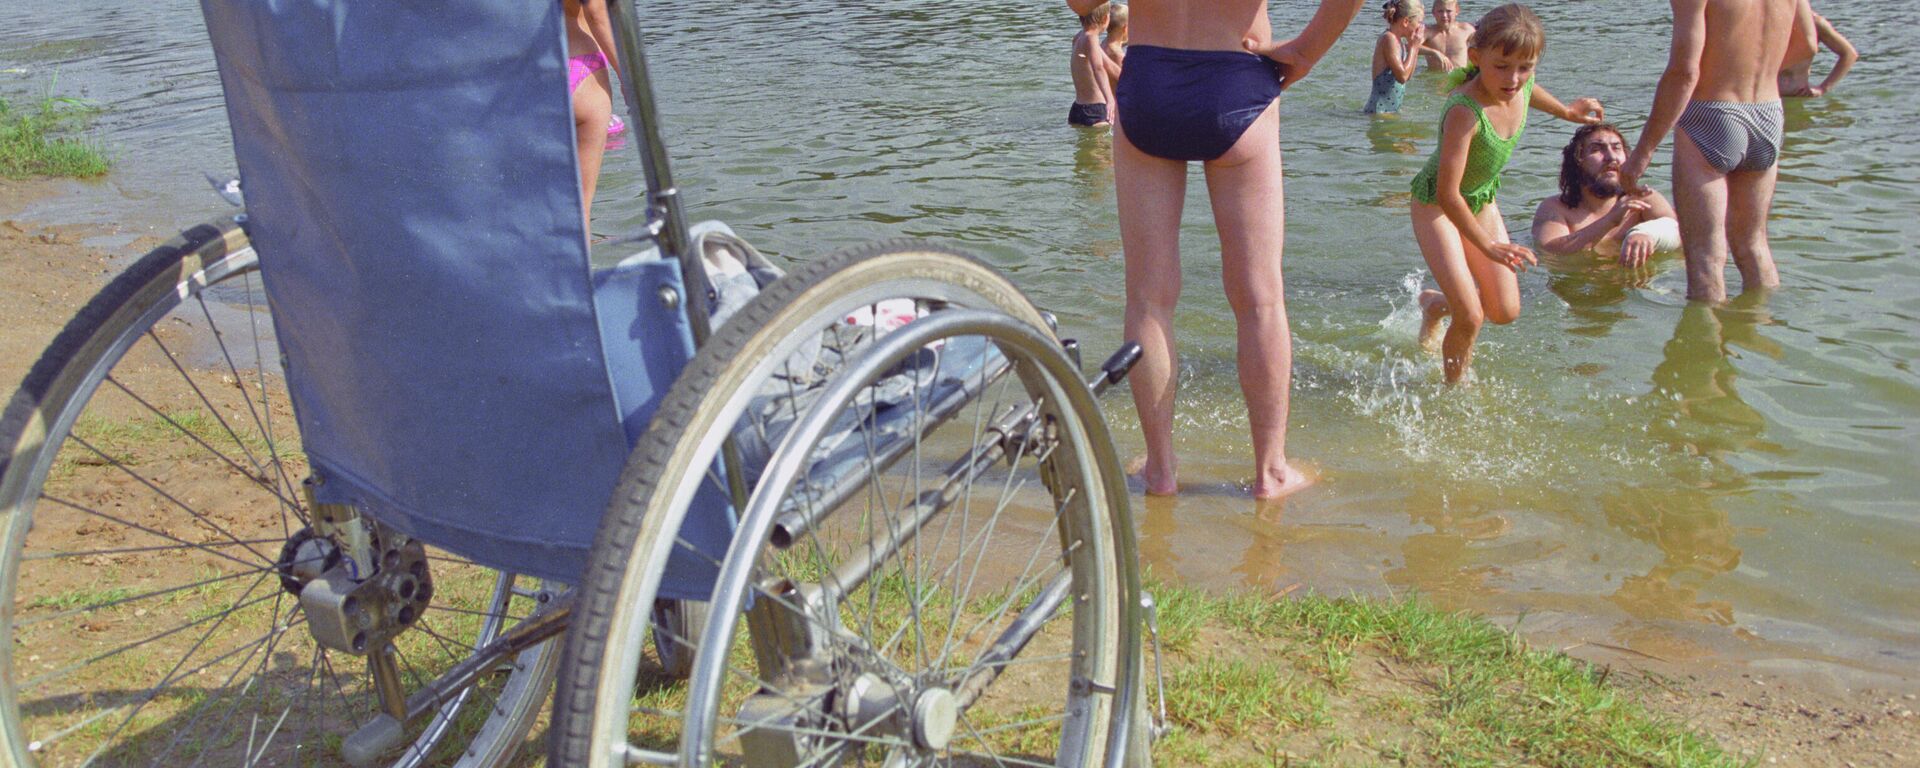 Инвалидная коляска на пляже - Sputnik Латвия, 1920, 25.06.2021